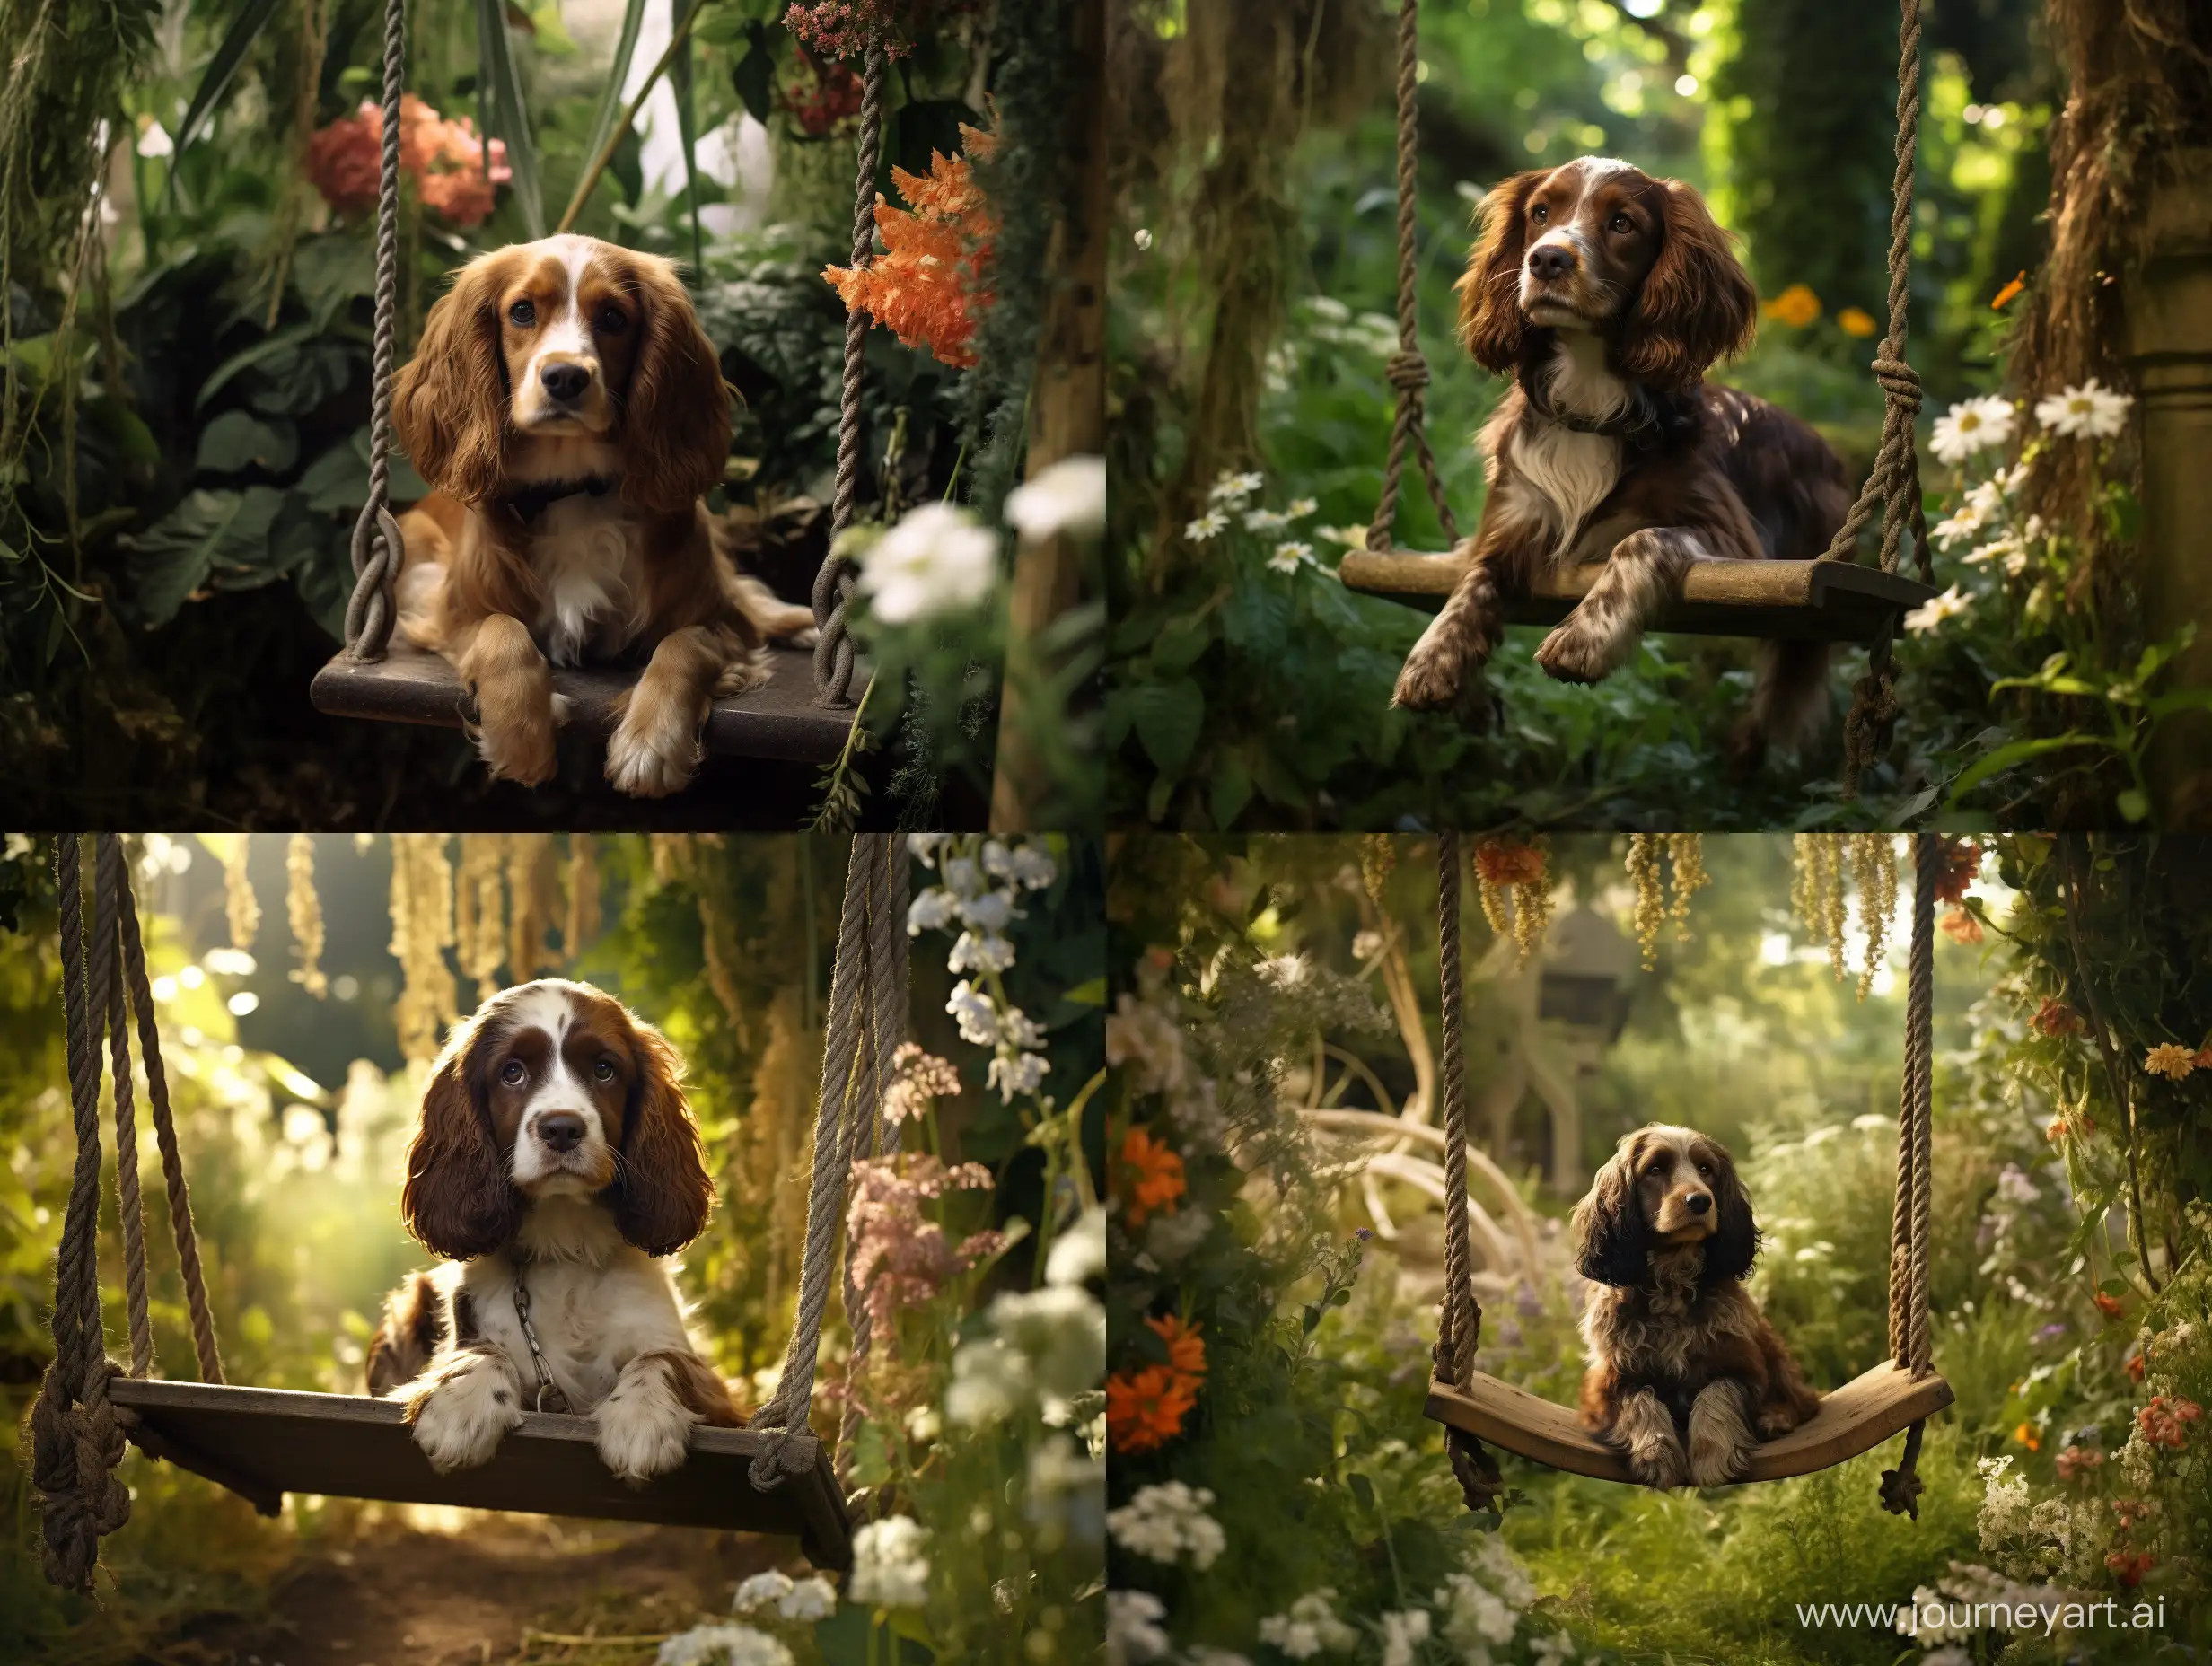 Adorable-Spaniel-Enjoying-a-Swing-in-a-Picturesque-Overgrown-Garden